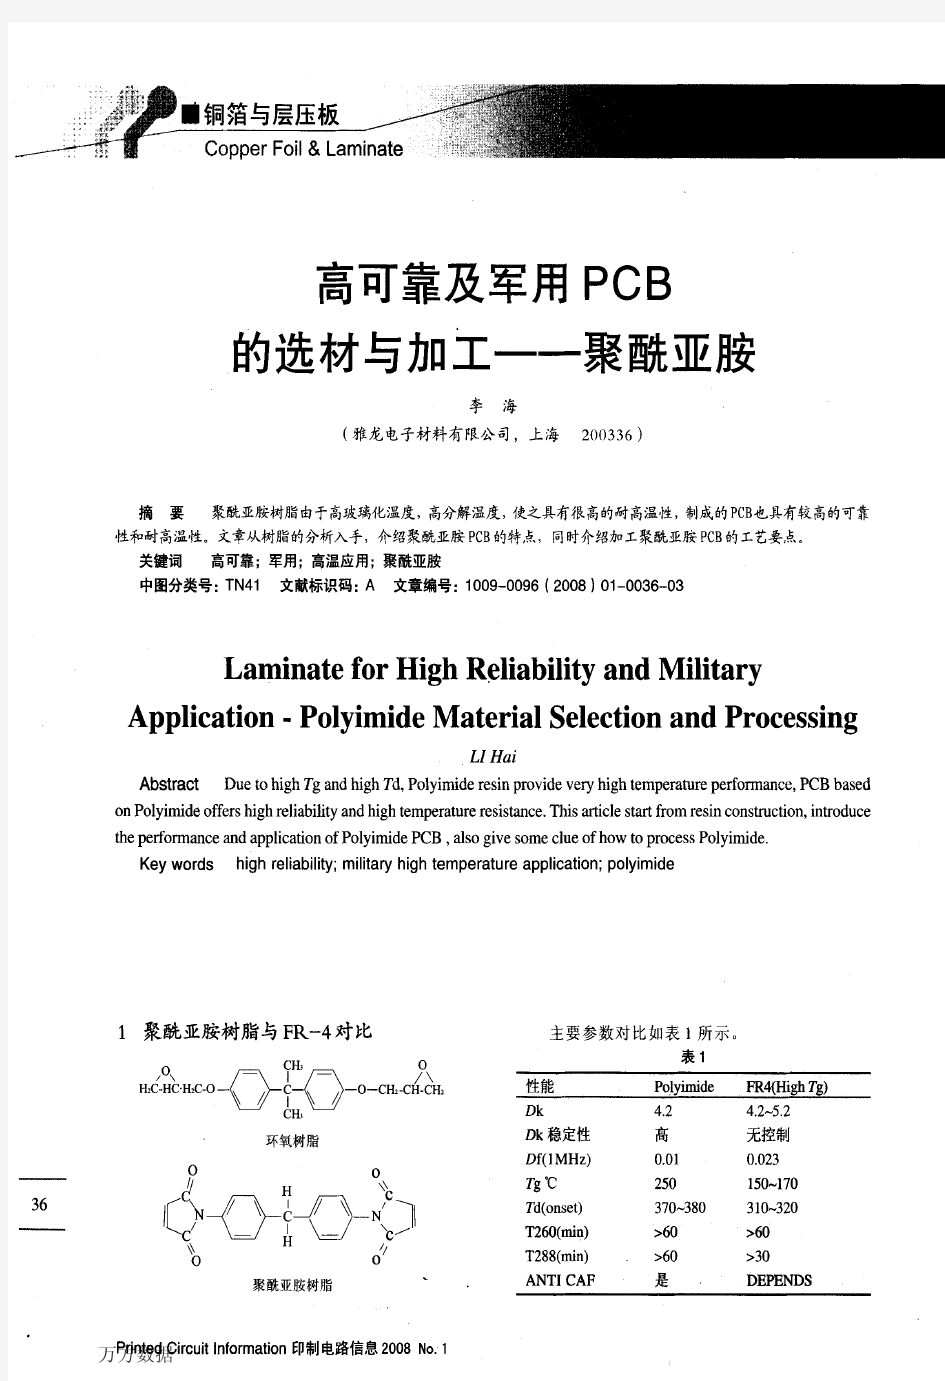 高可靠及军用PCB的选材与加工——聚酰亚胺